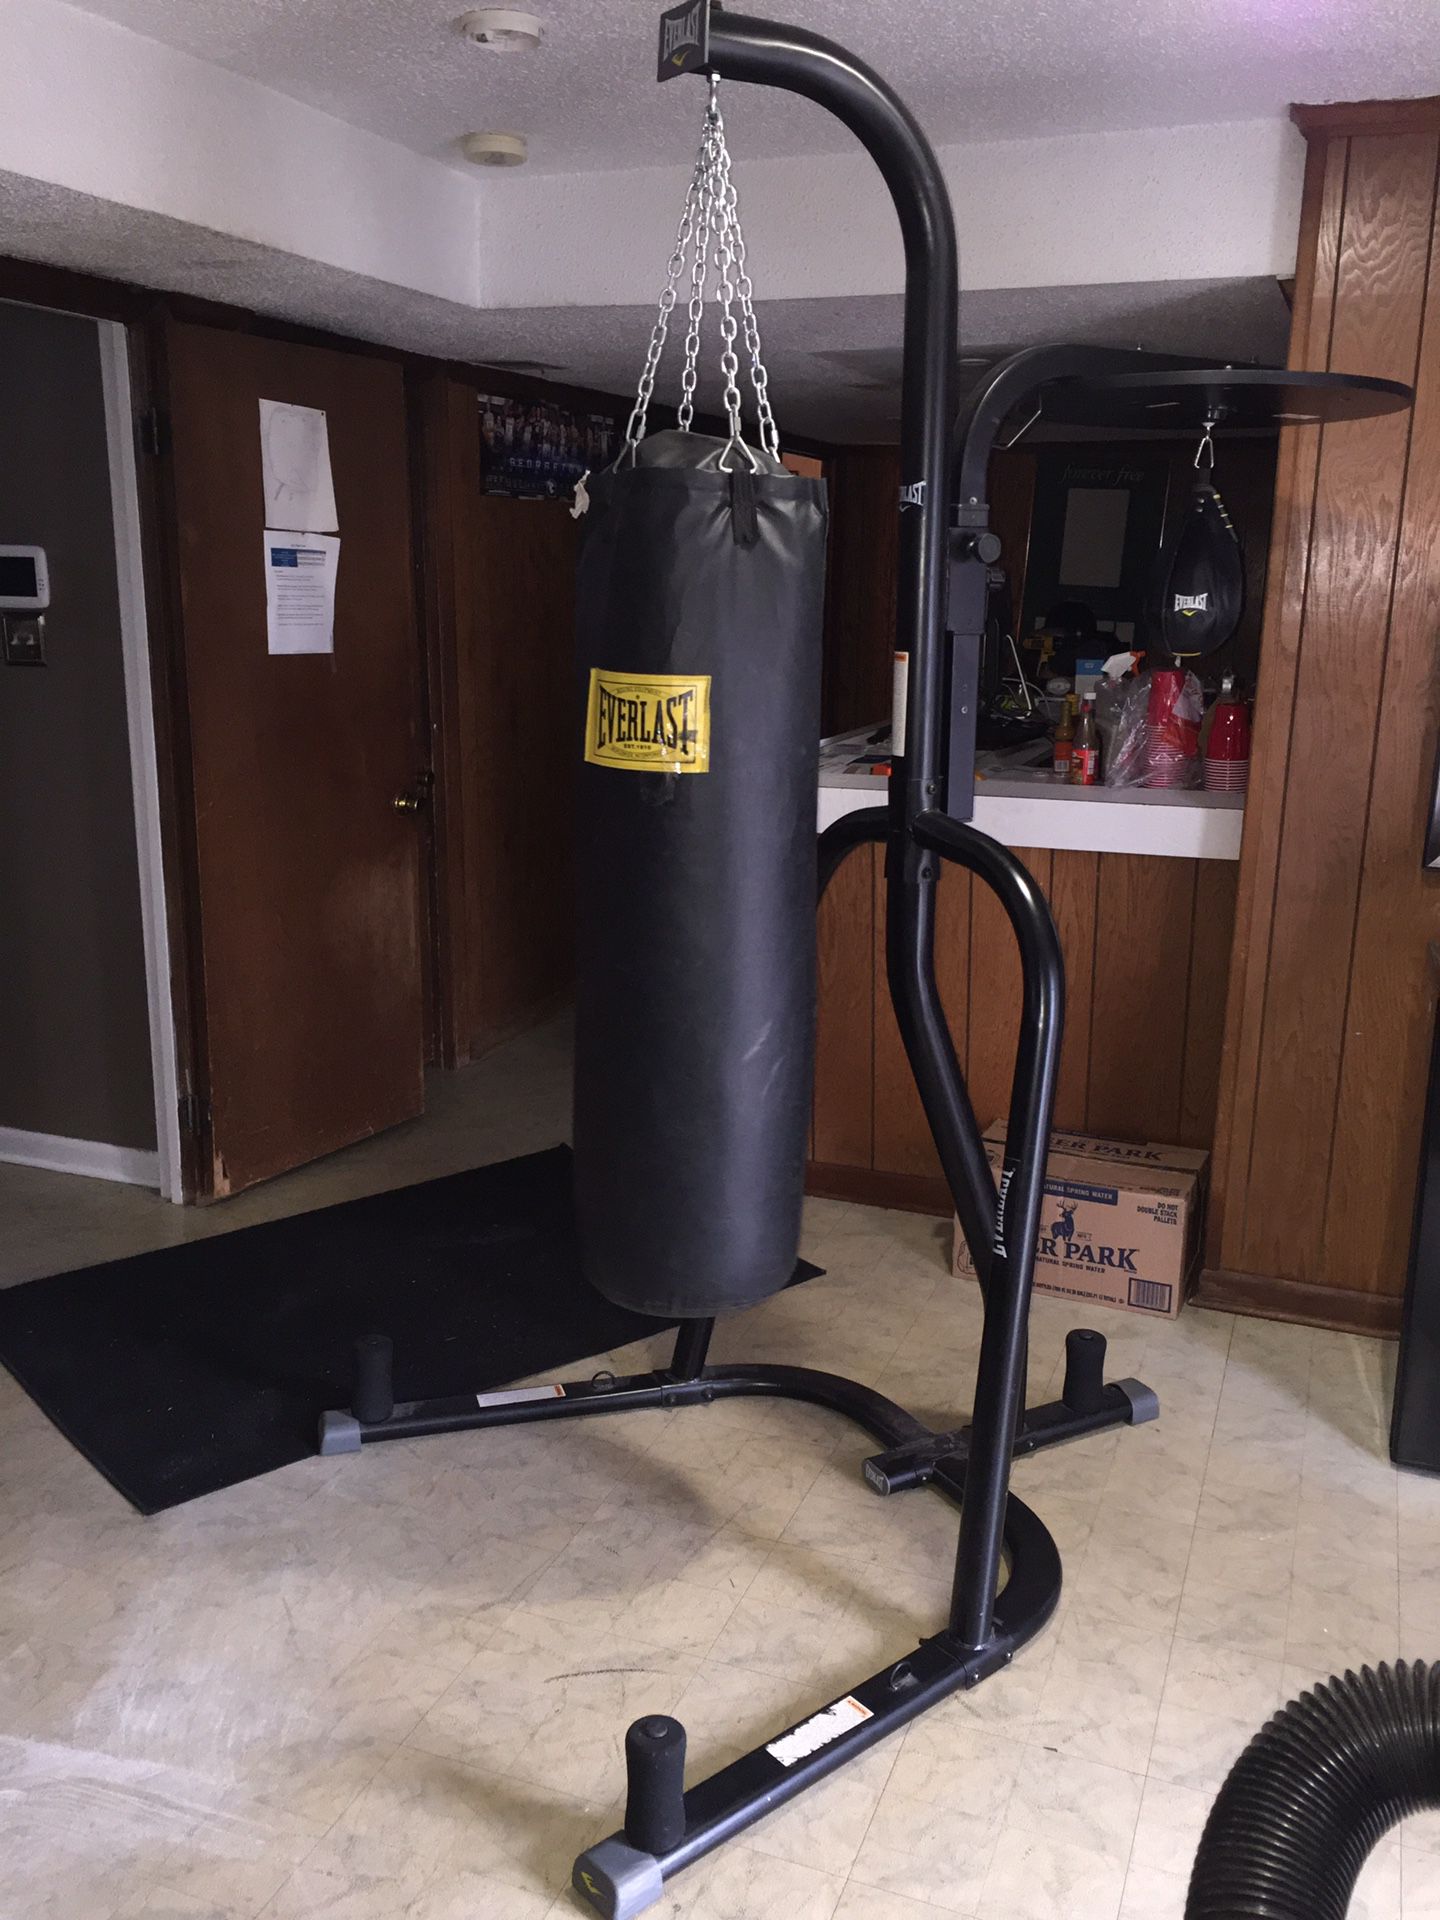 Everlast punching bag setup